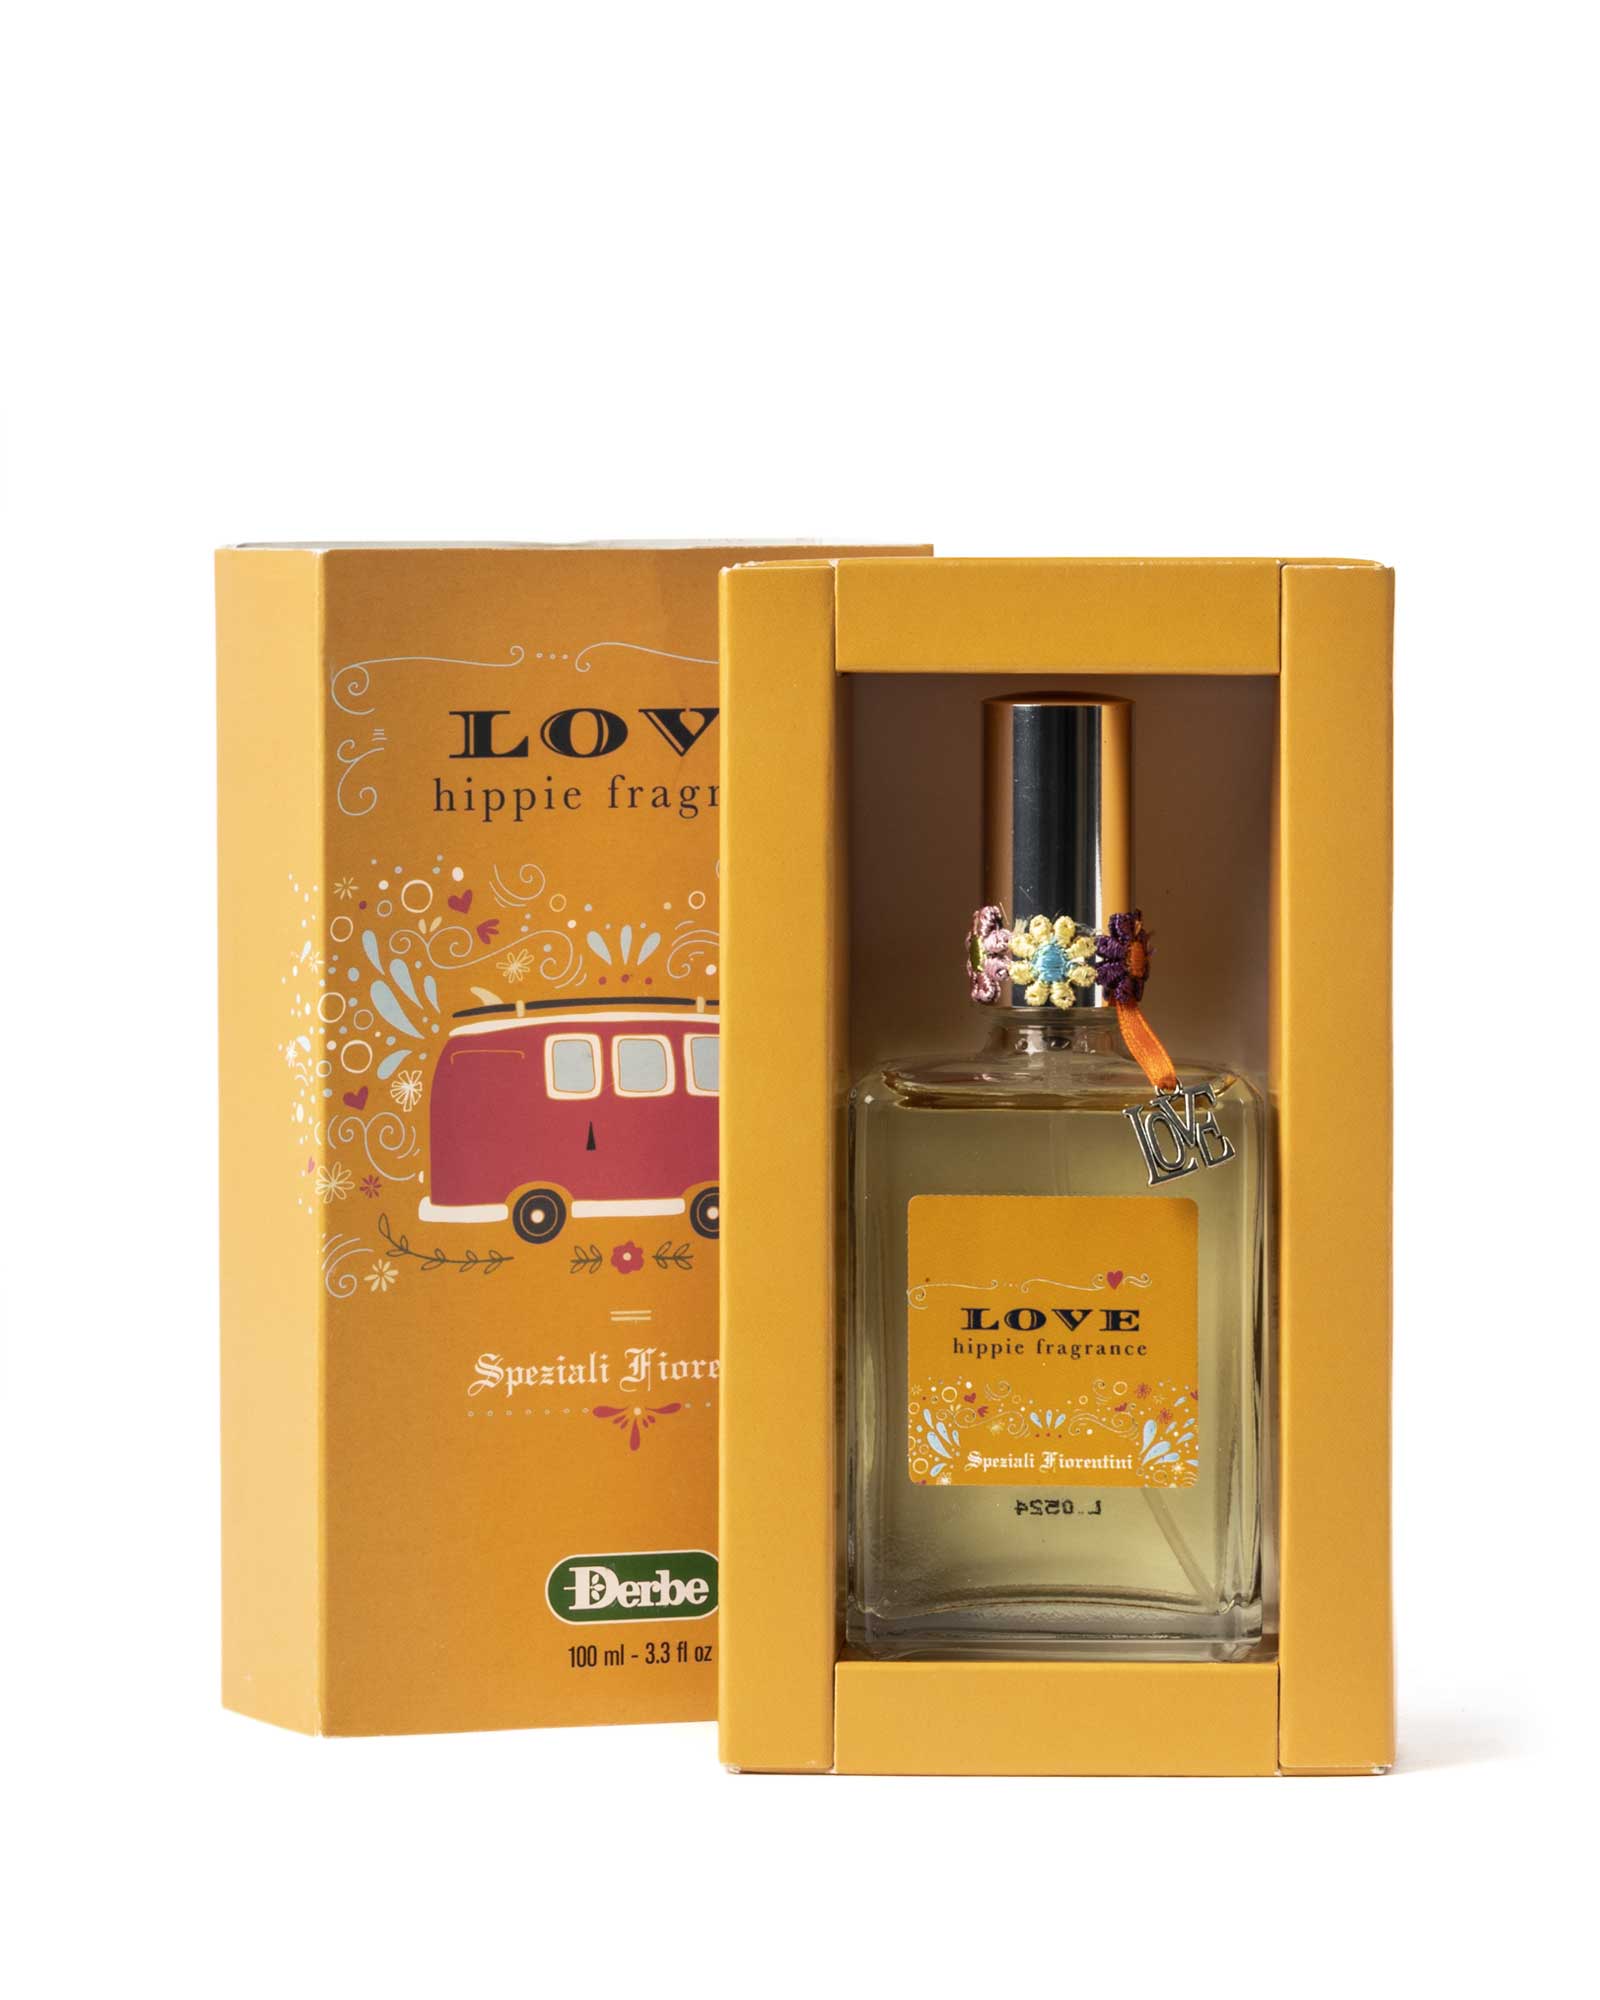 perfume-love-hippie-fragrancia-speziali-fiorentini-caja-producto-derbe